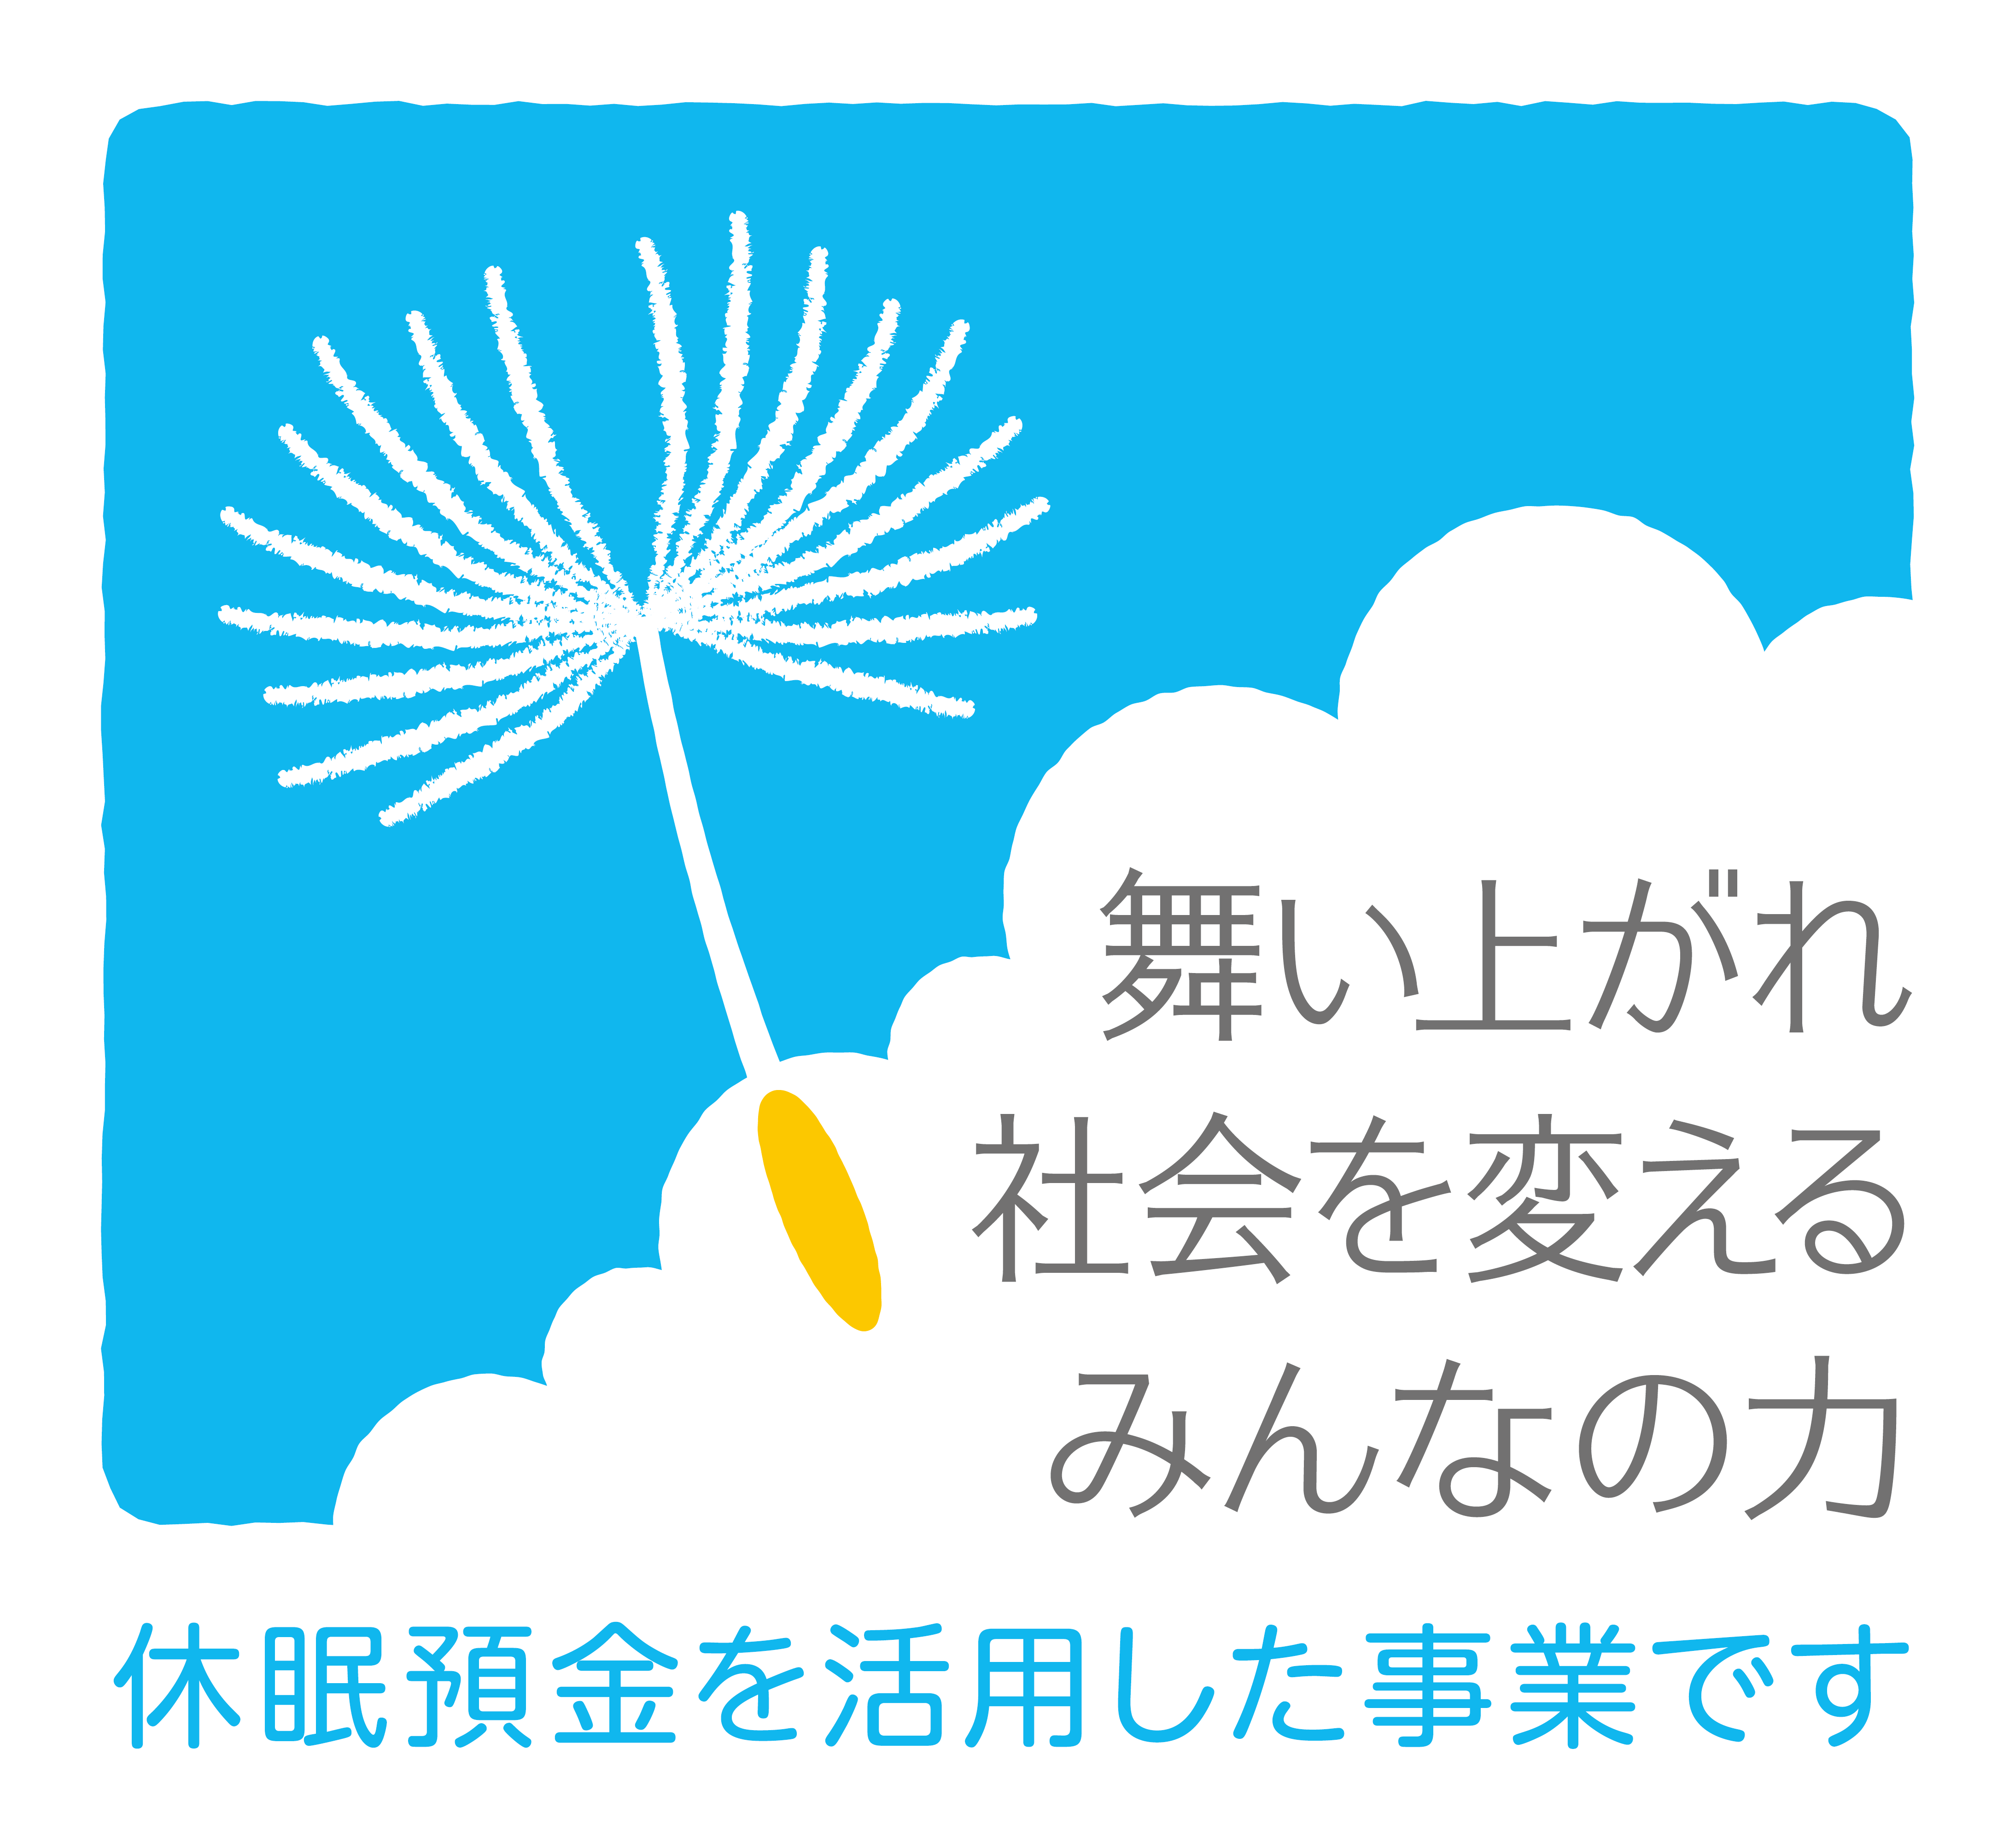 一般財団法人 日本民間公益活動連携機構